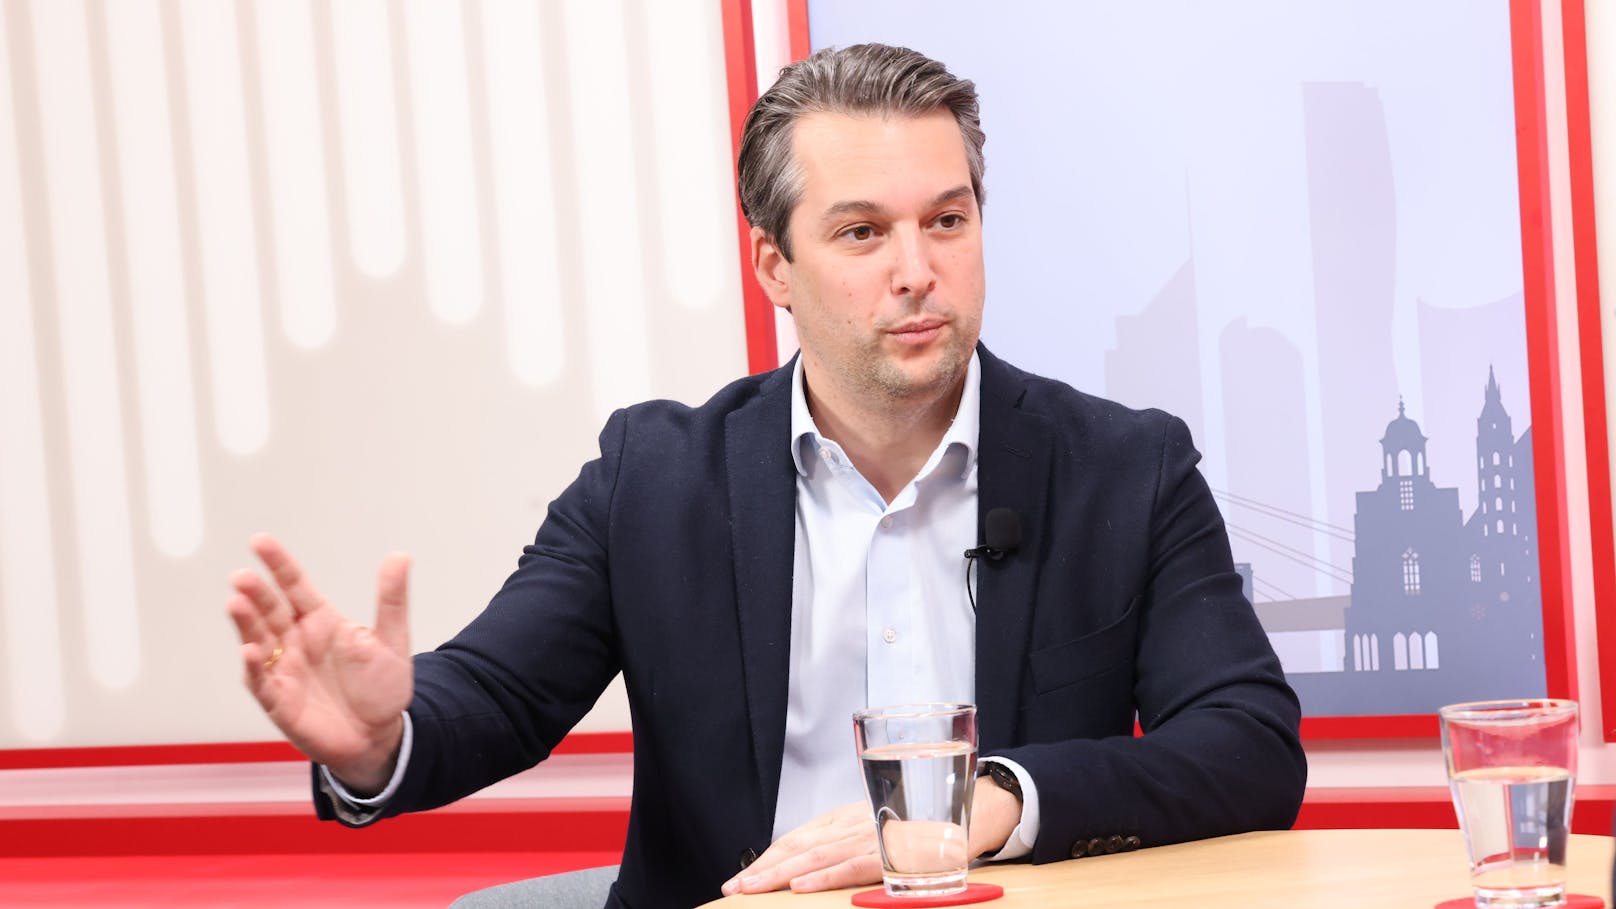 Höhere Schulden in Wien: FPÖ vermutet "Budgetkosmetik"